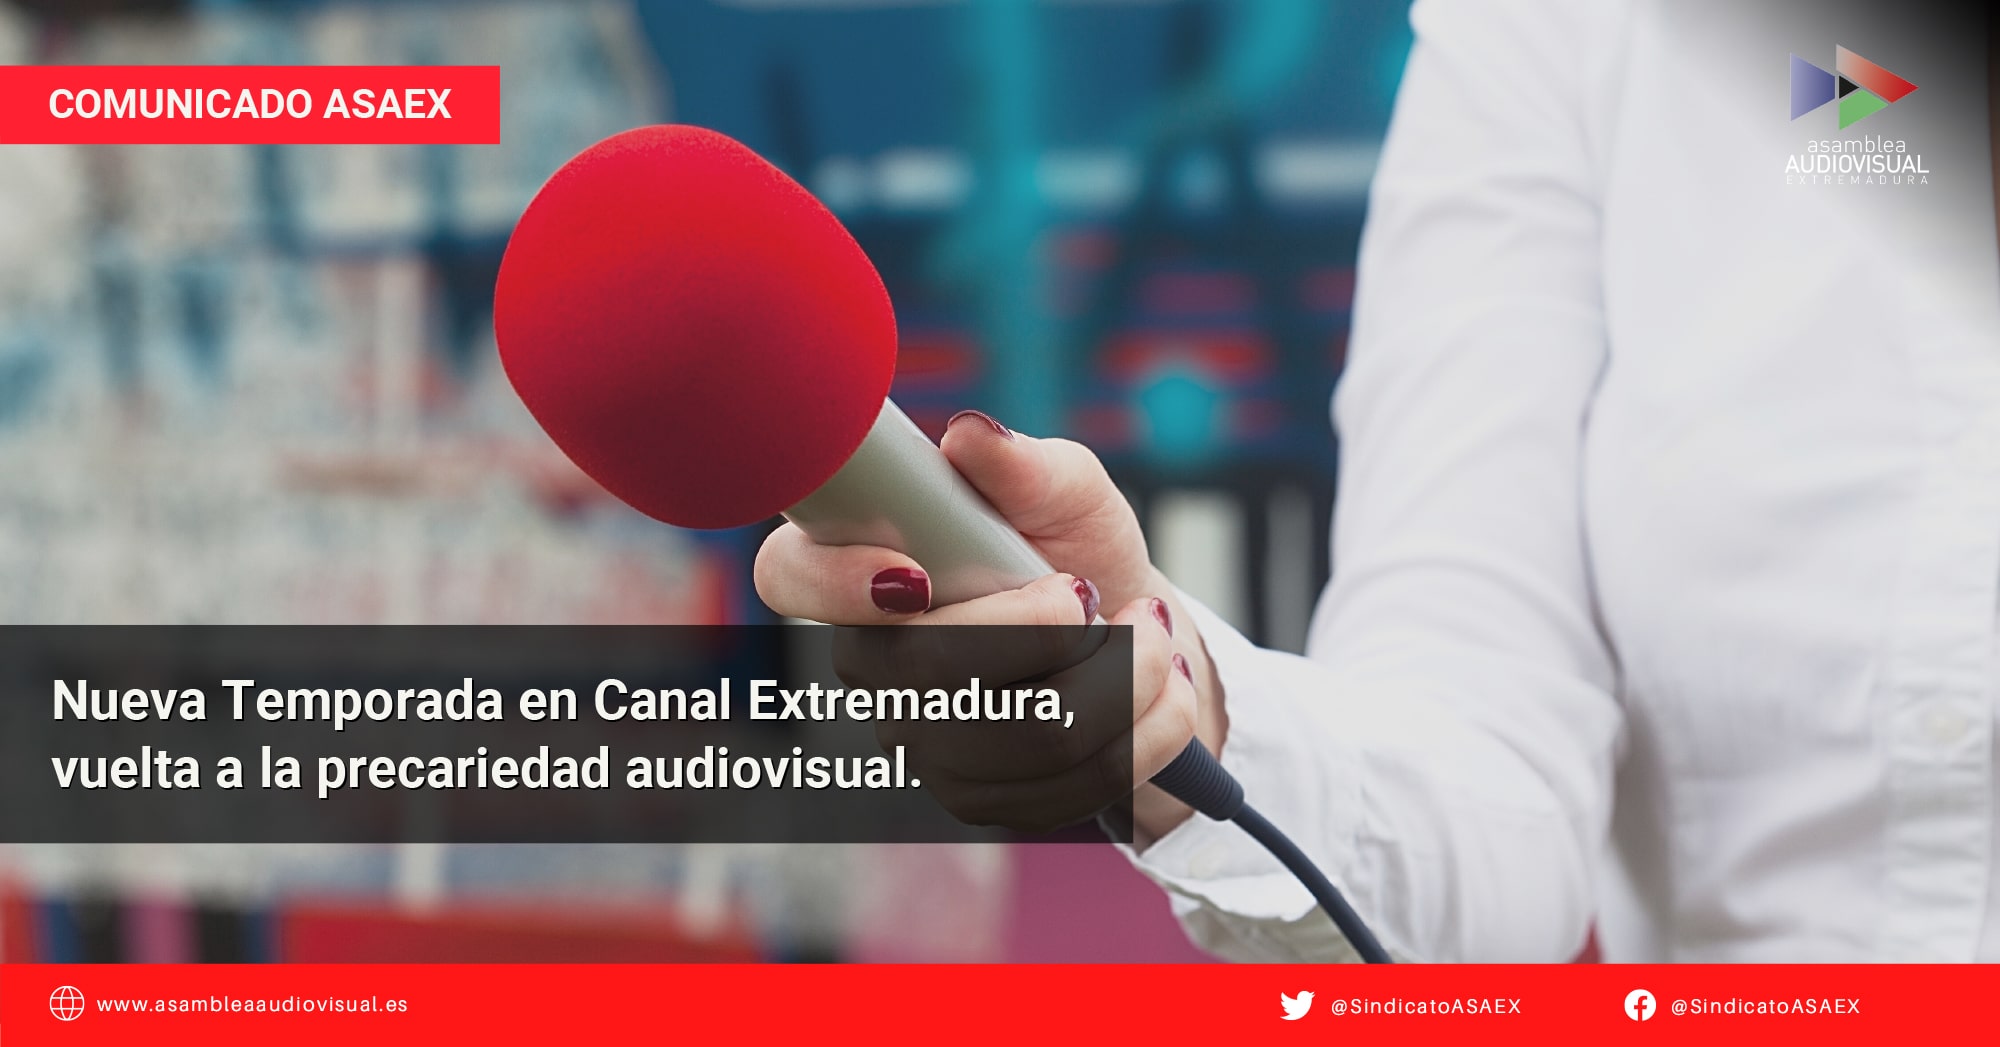 Comunicado ASAEX - Nueva Temporada Canal Extremadura vuelta a la precariedad audiovisual